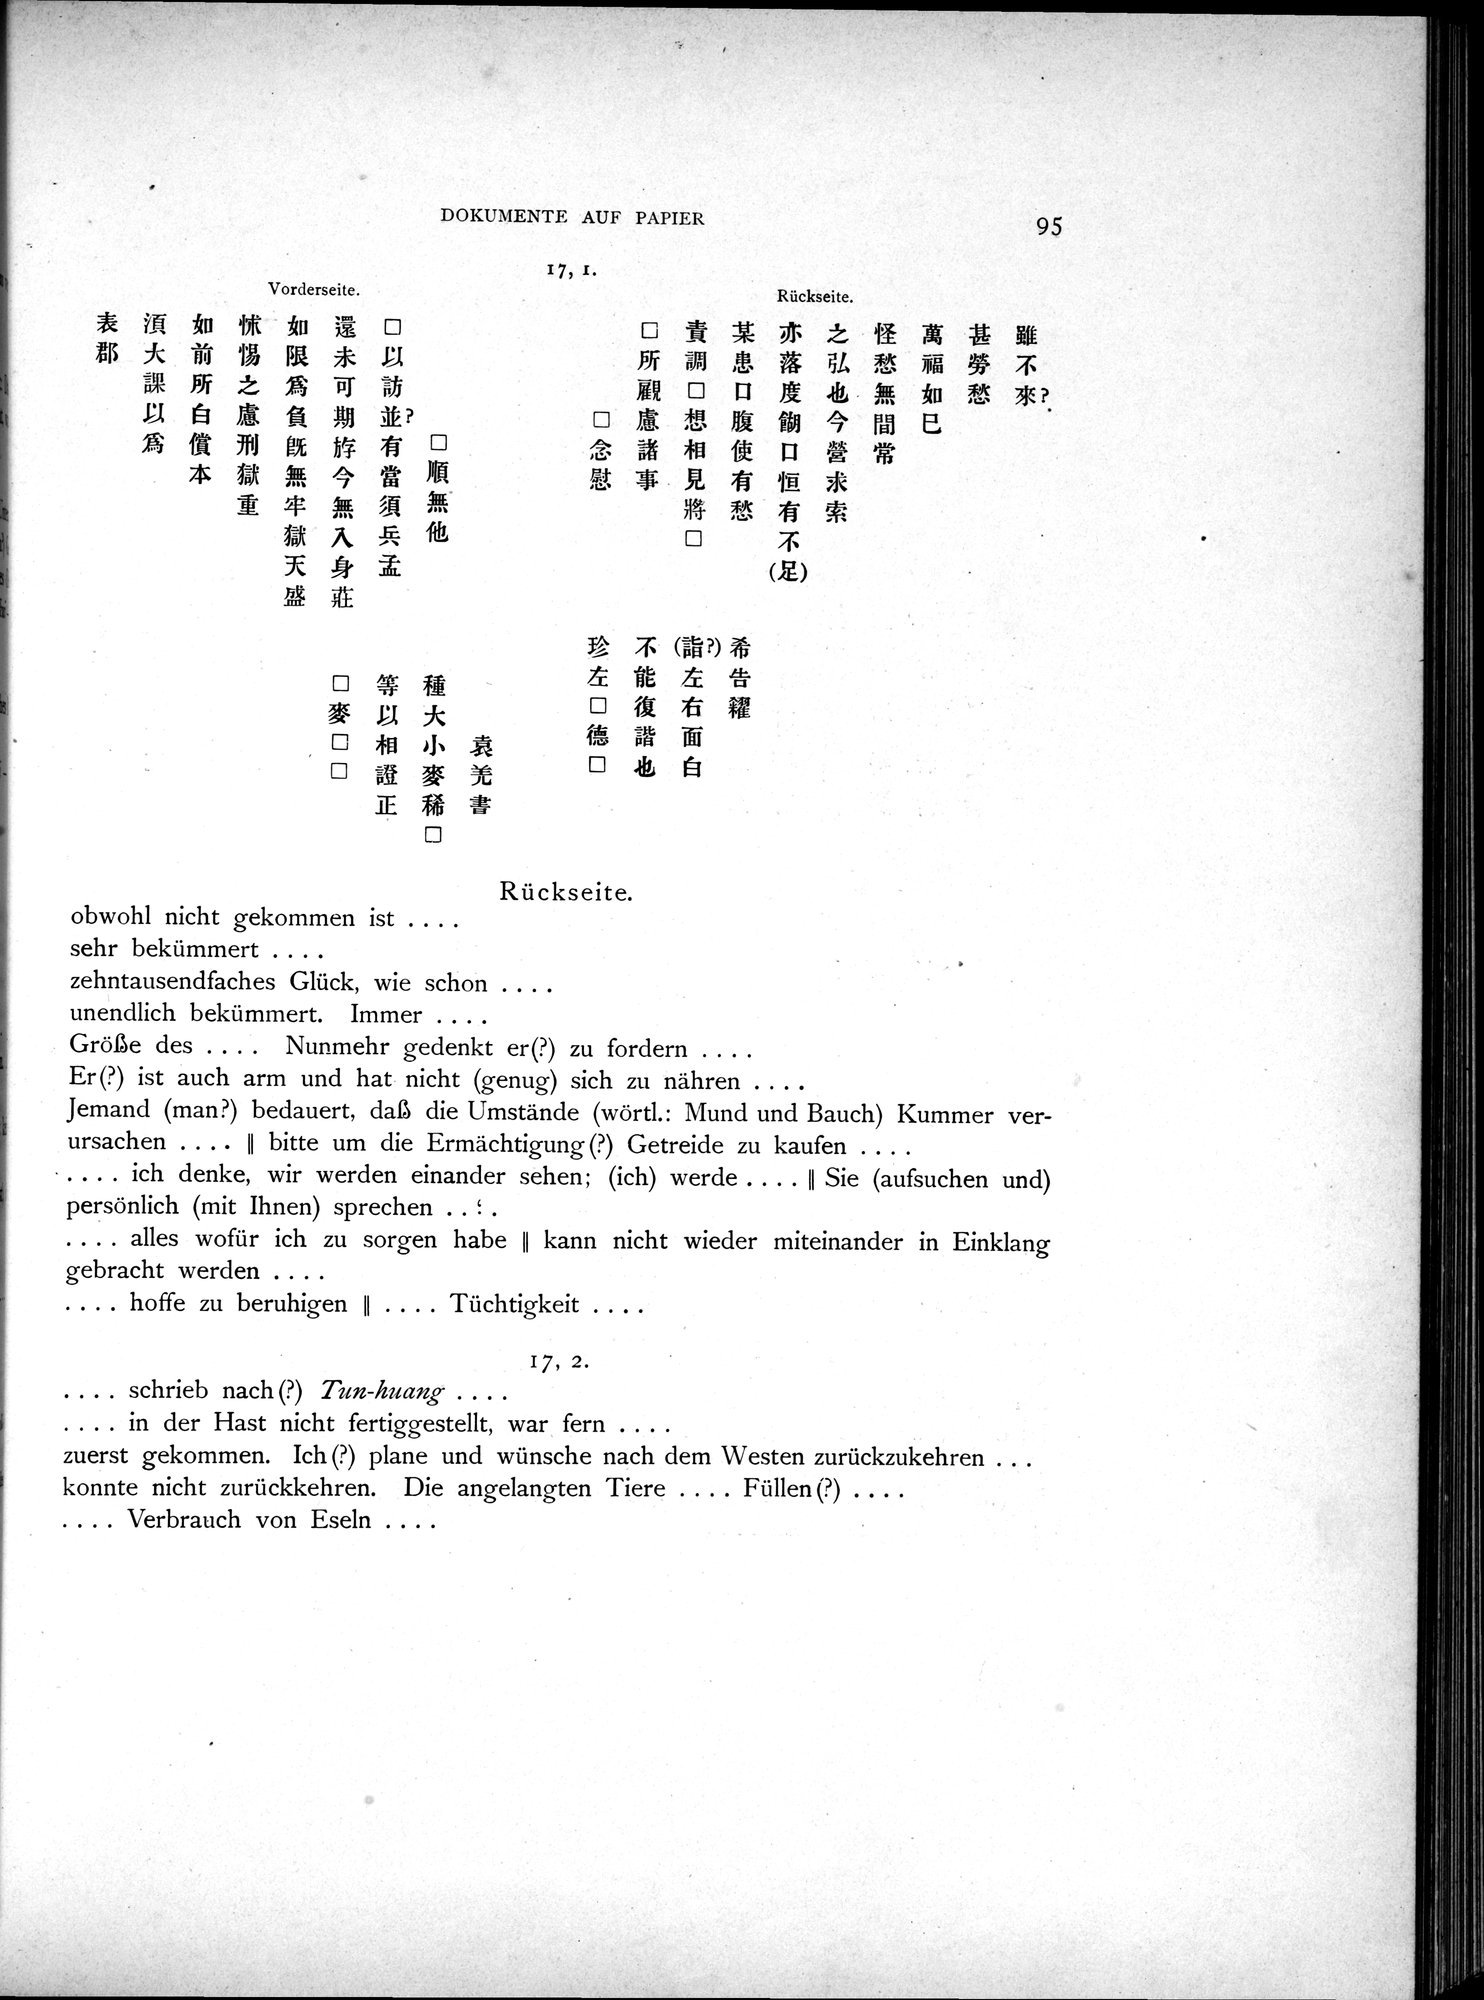 Die Chinesischen Handschriften- und sonstigen Kleinfunde Sven Hedins in Lou-lan : vol.1 / Page 119 (Grayscale High Resolution Image)